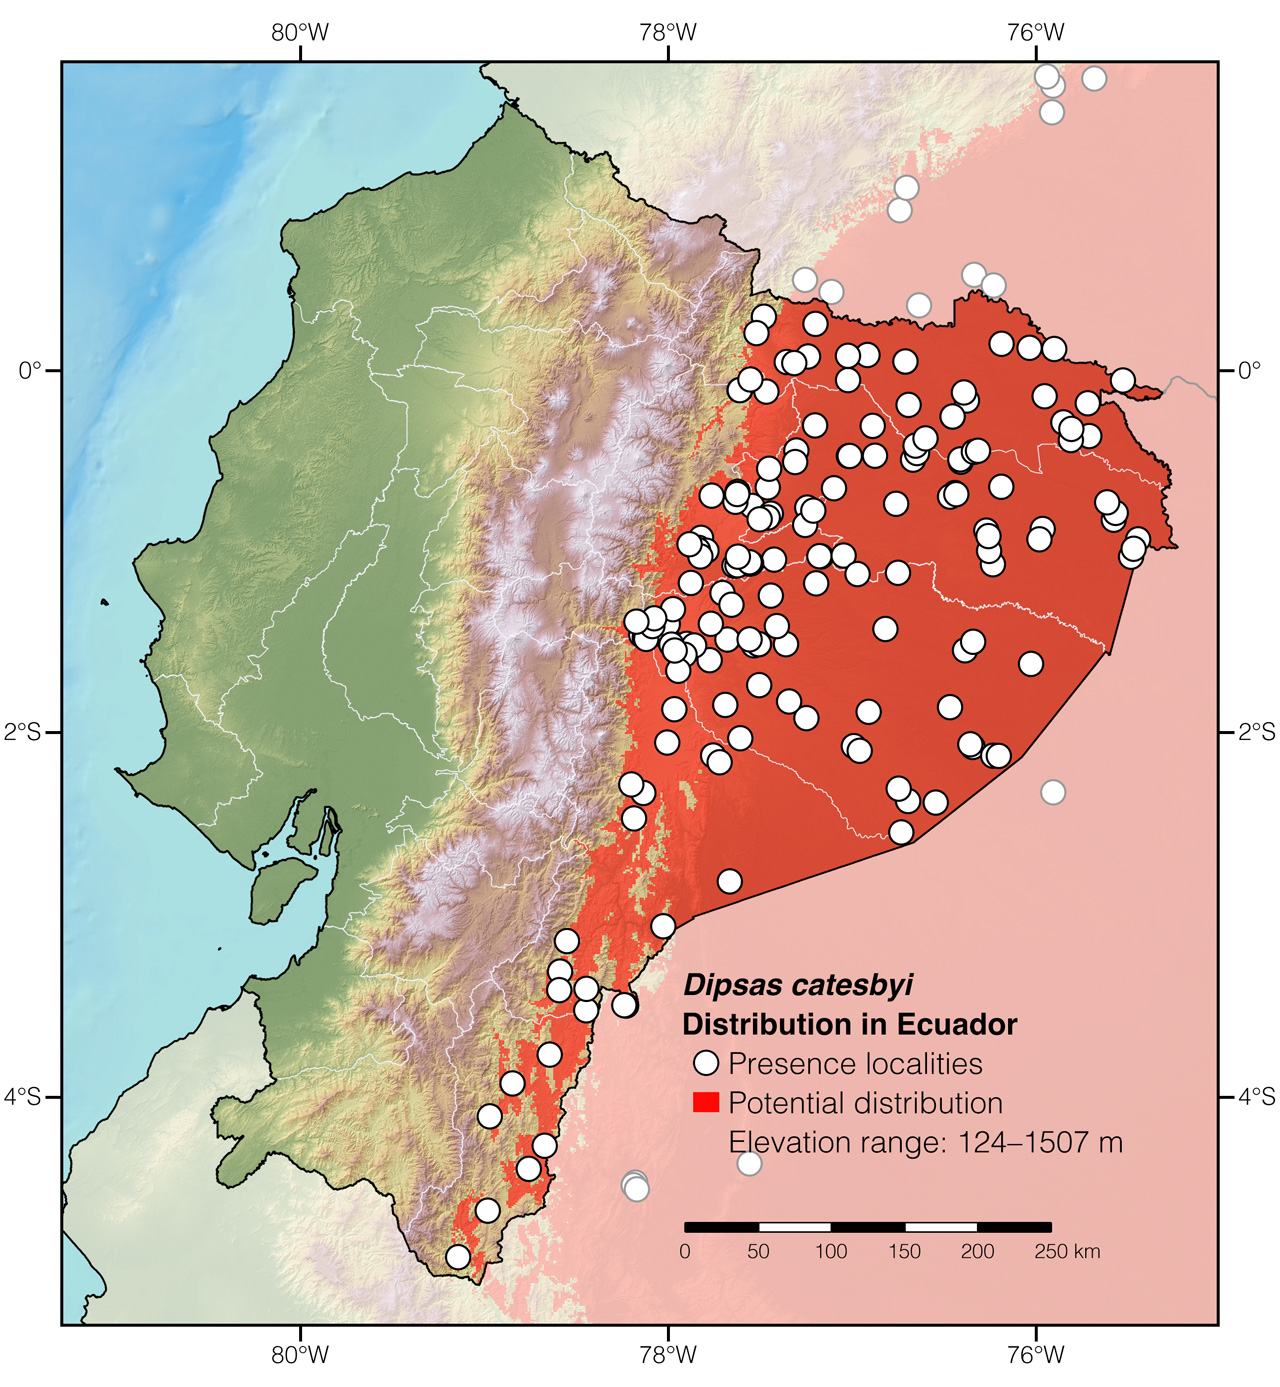 Distribution of Dipsas catesbyi in Ecuador